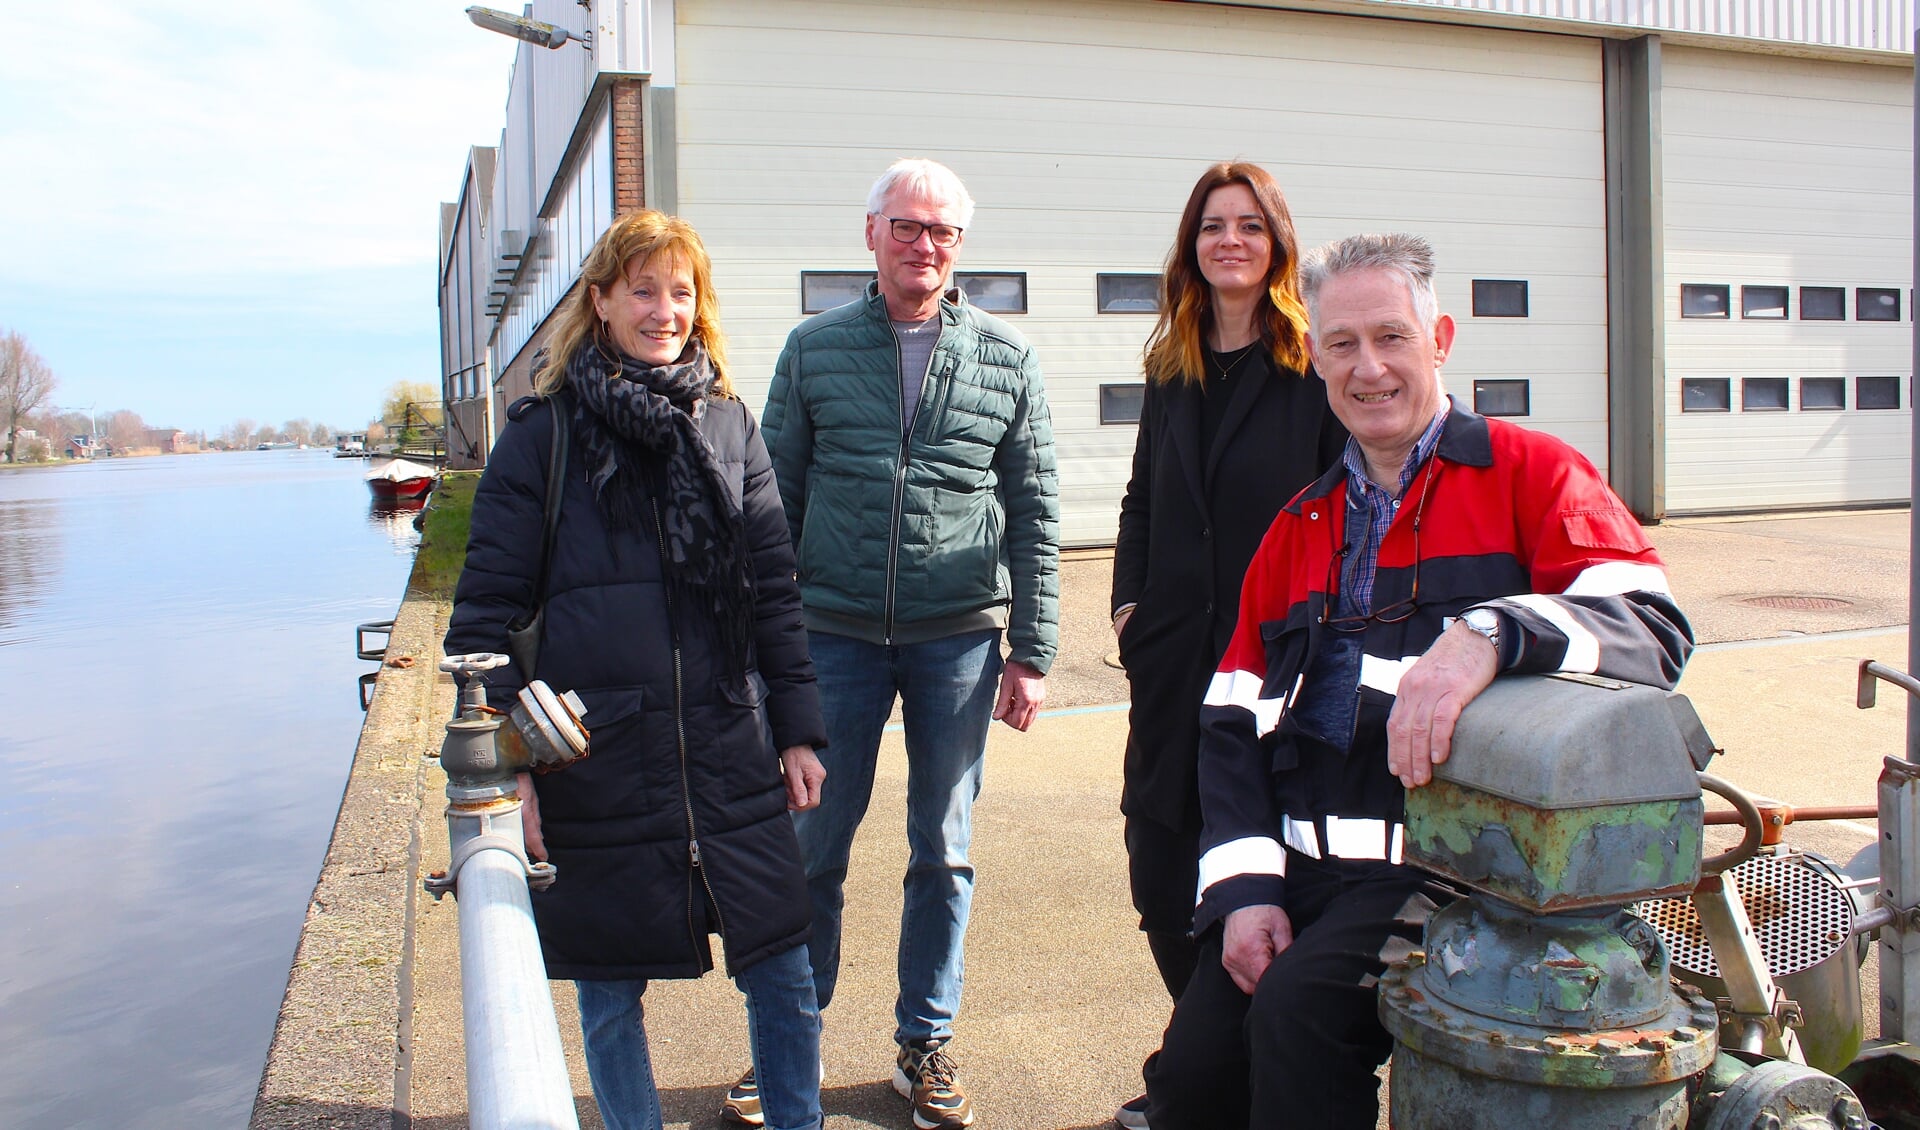 Laatste bezoek aan Scheepswerf De Vooruitgang en Verschuur Olie in Alphen: vlnr Hanny en Leo Streng, Ramona Dagevos en Teun de Jong.